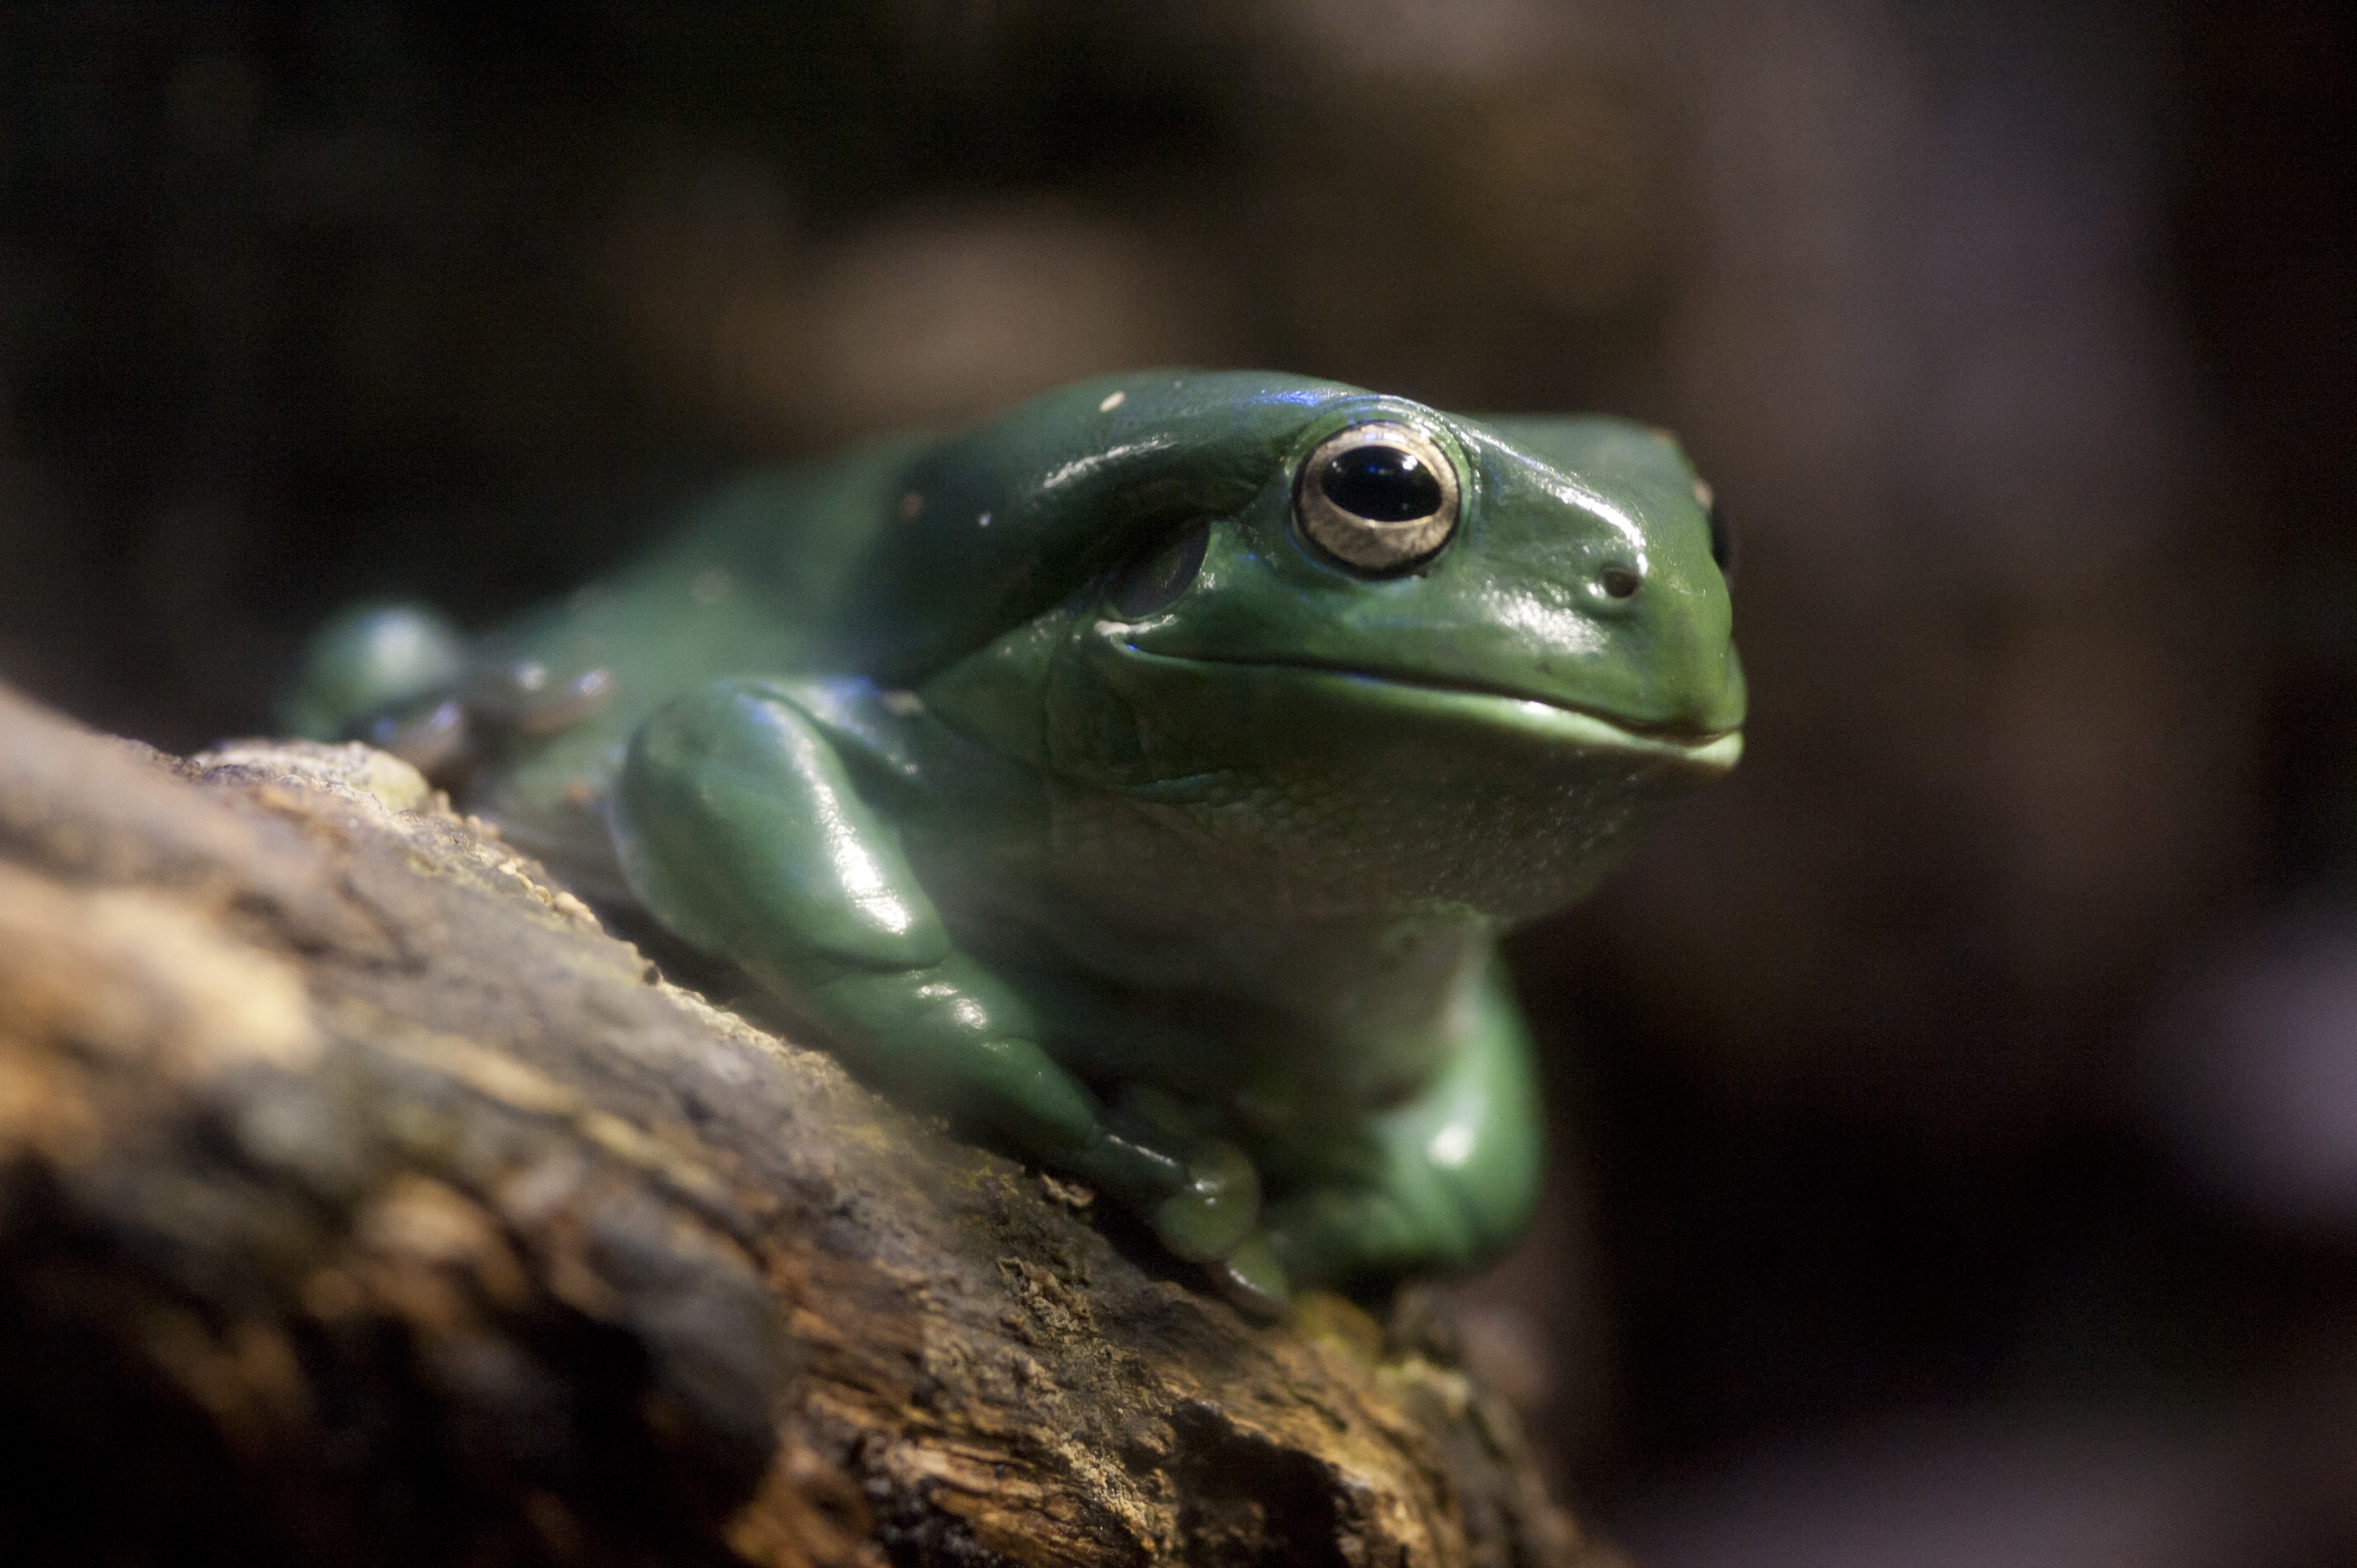 SLMA Green Tree Frog